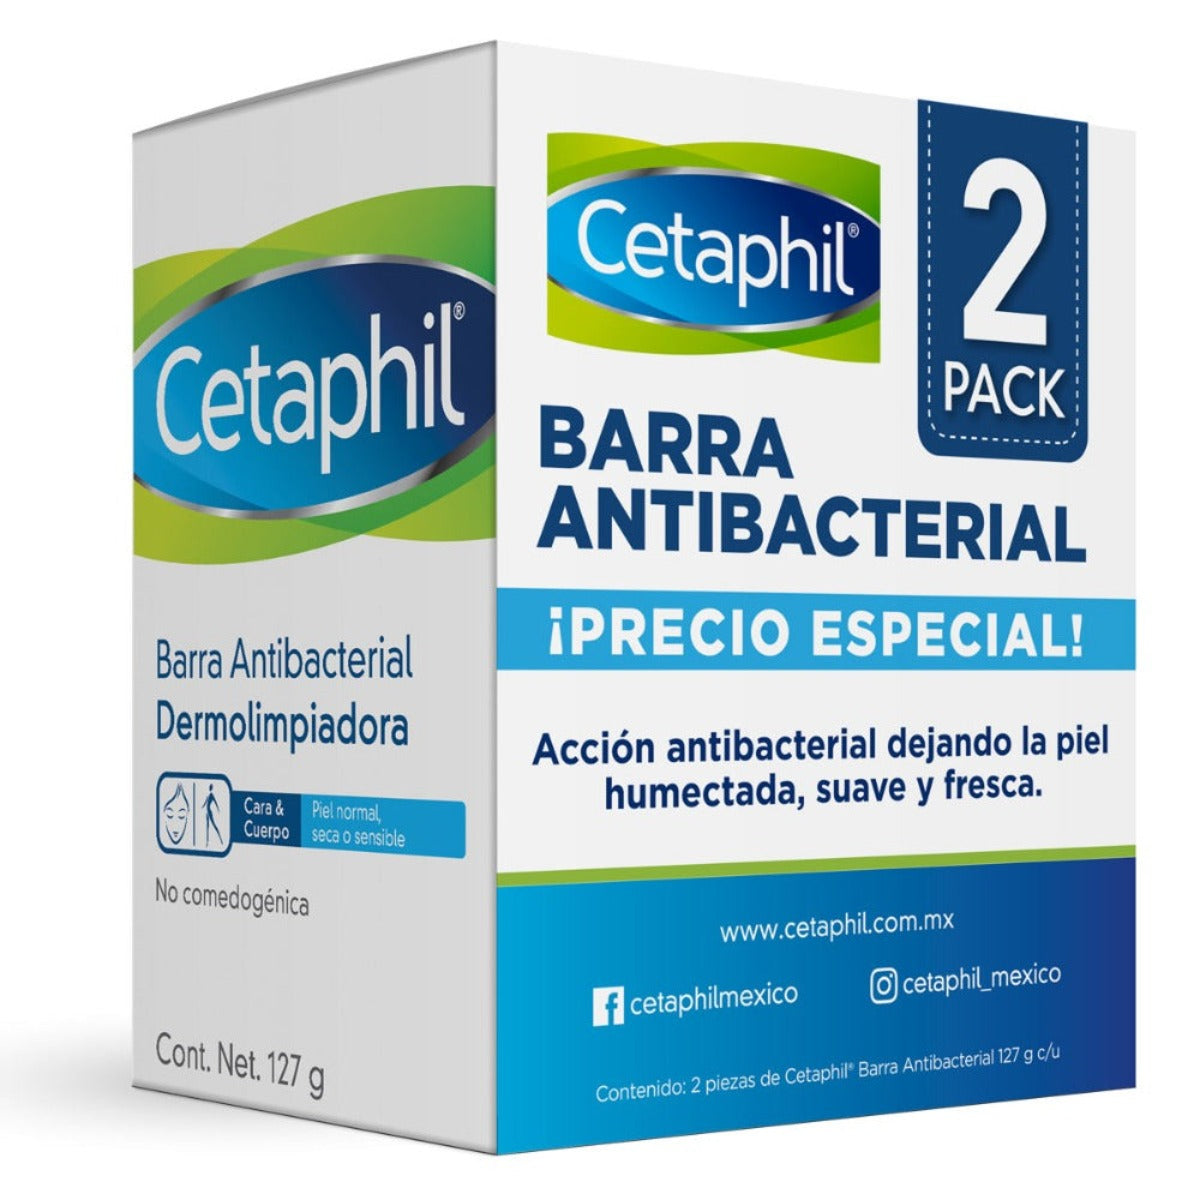 Cetaphil 2 Pack, Barra limpiadora antibacterial, 254gr